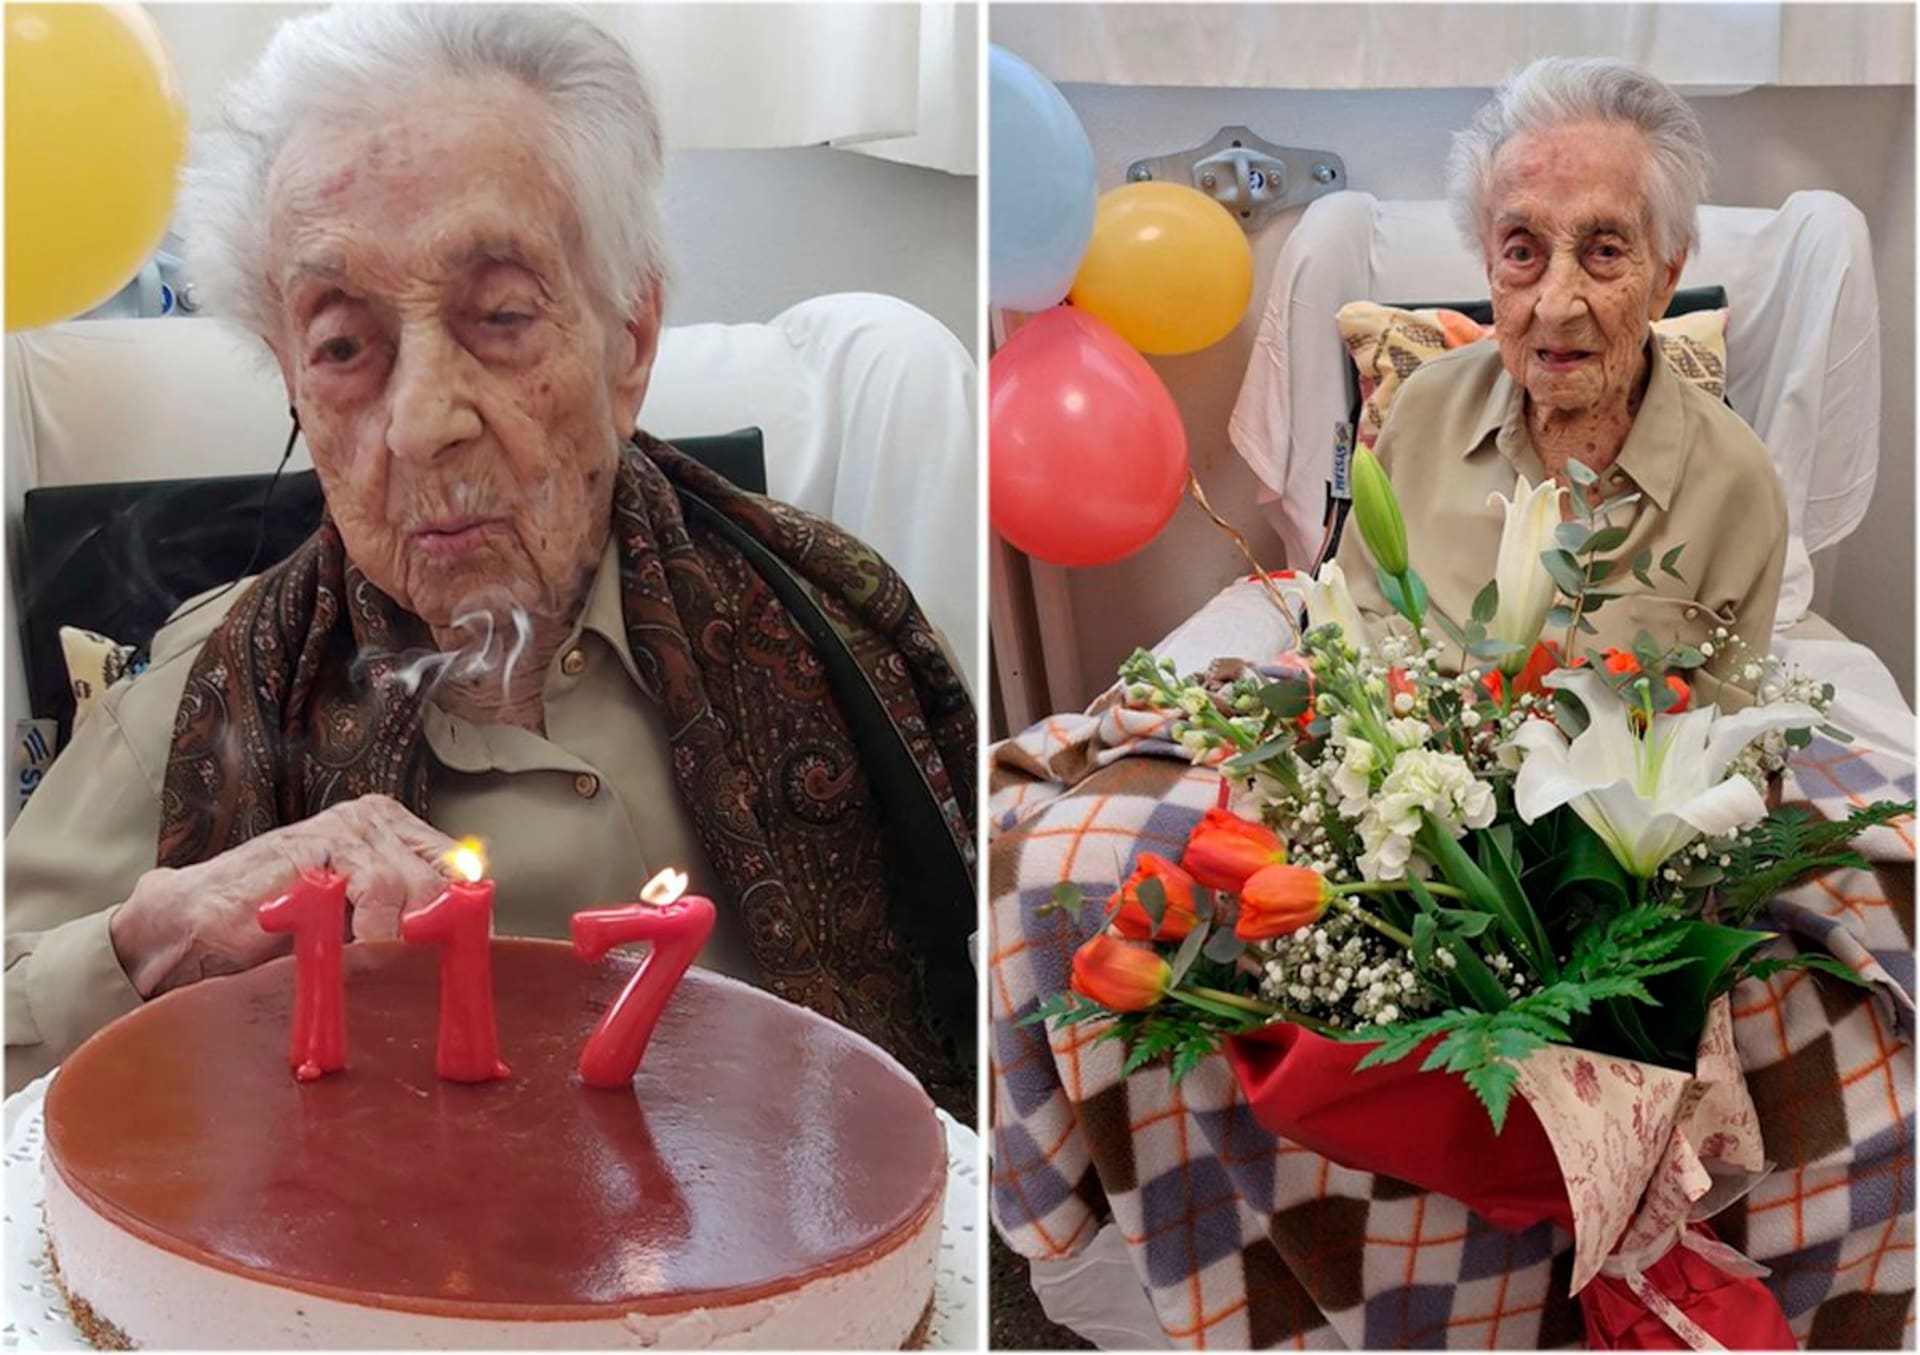 117 años. Es la persona más longeva del mundo y la ciencia quiere saber cómo lo logró: “Nunca perdí la alegría de vivir”